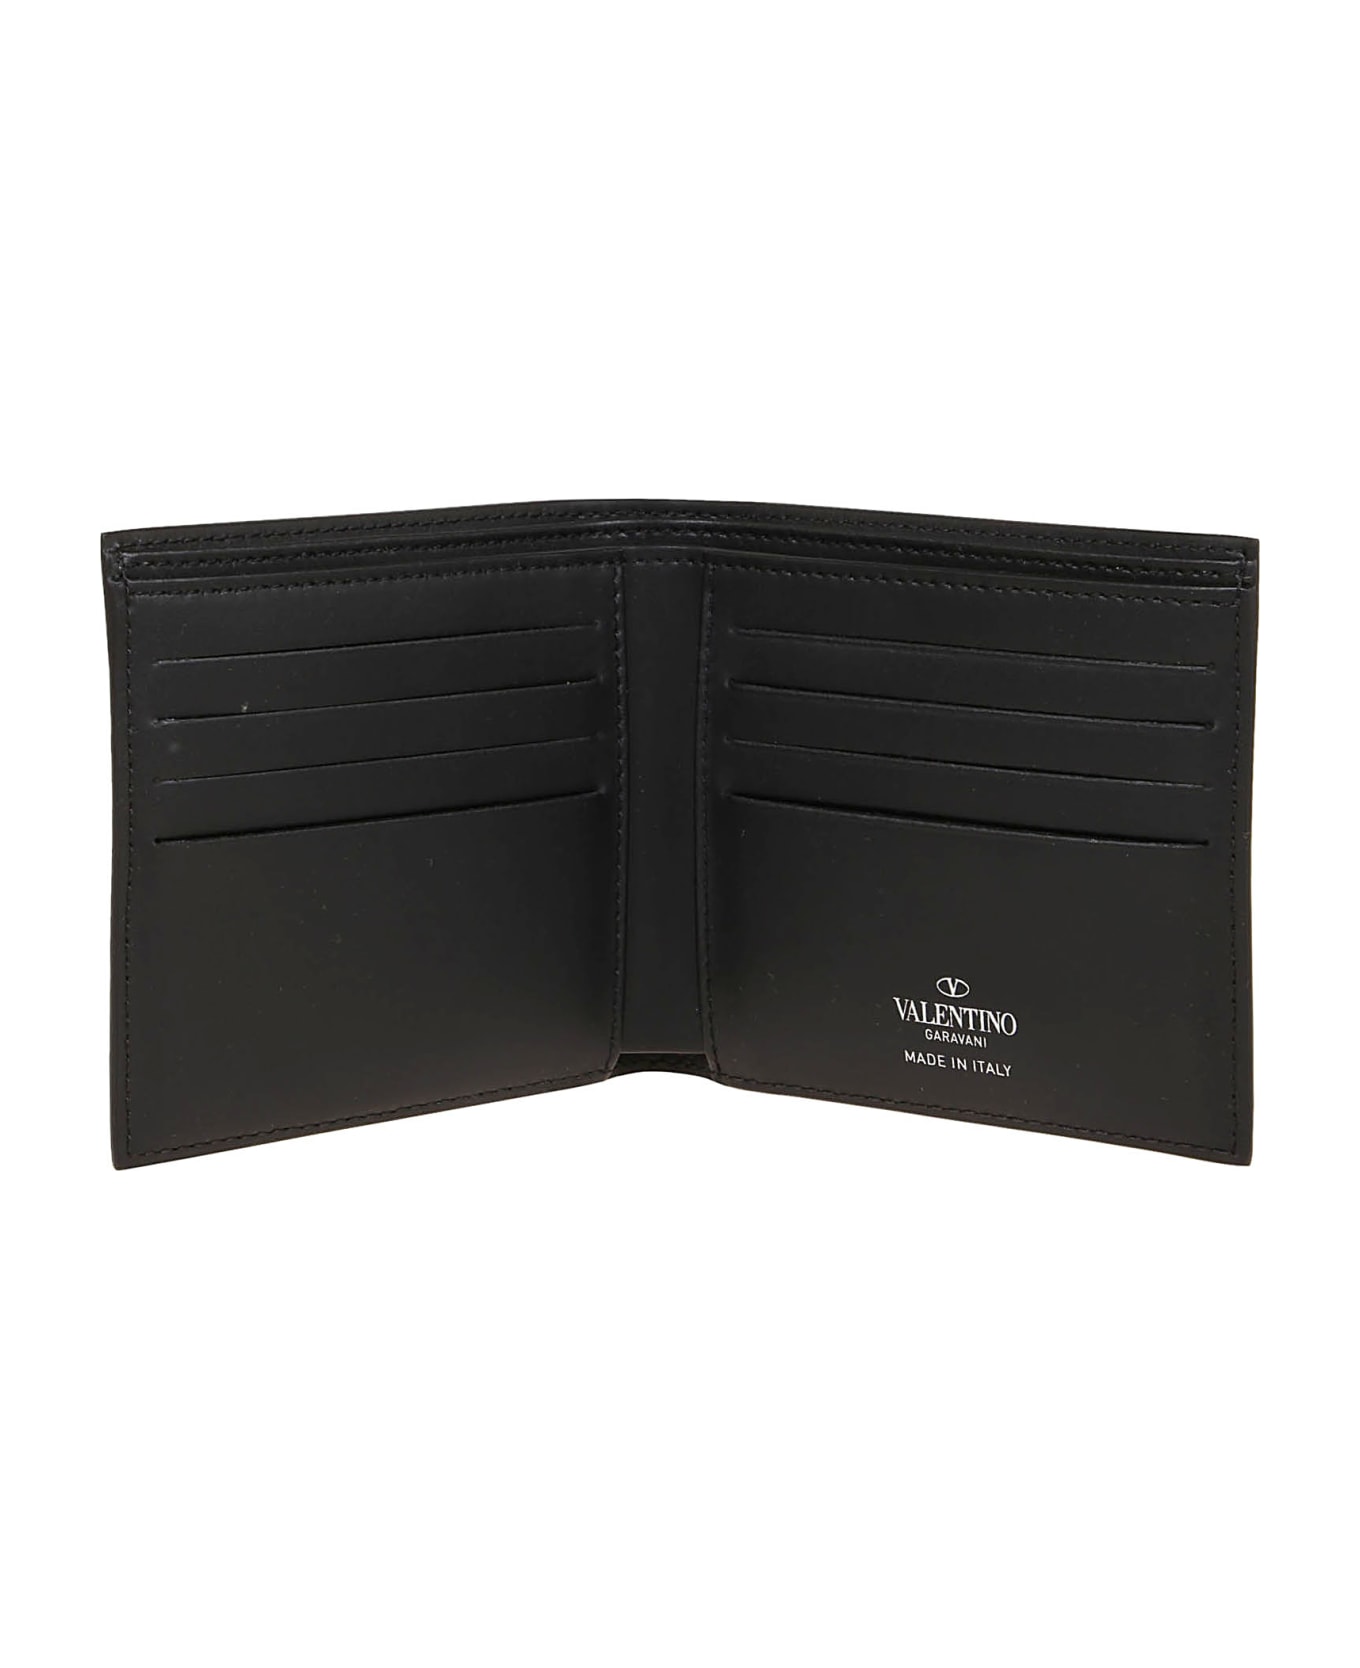 Valentino Optical Garavani Billfold Wallet Only Card - No Nero